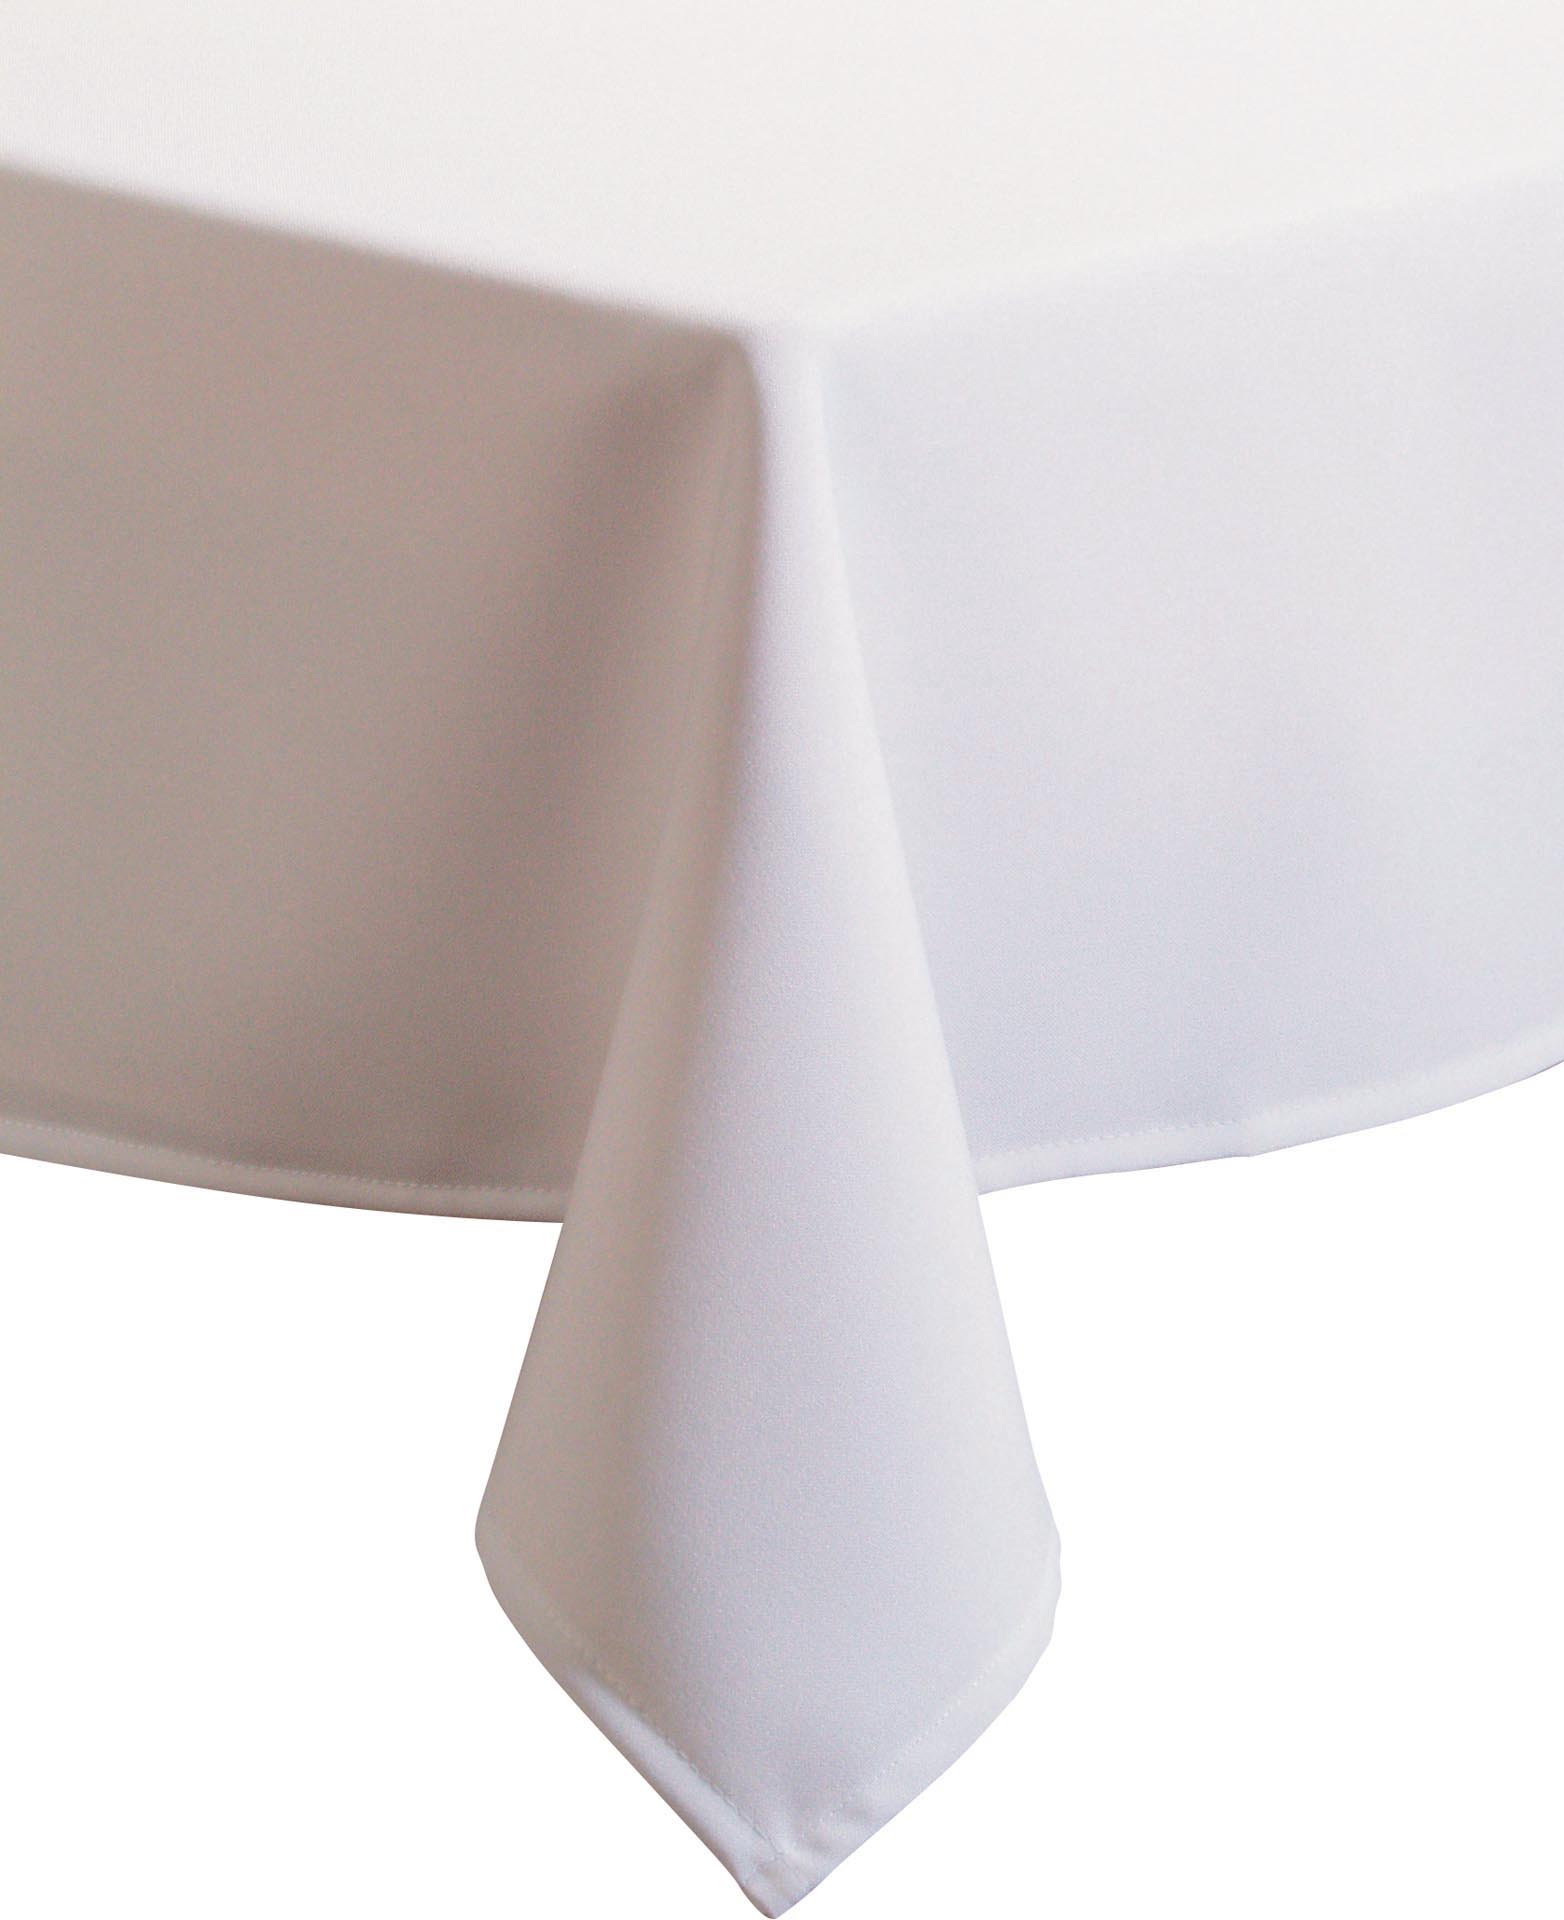 Tischdecke weiß Exaliber 140x140 cm 100% Polyester, auch als Mitteldecke geeignet